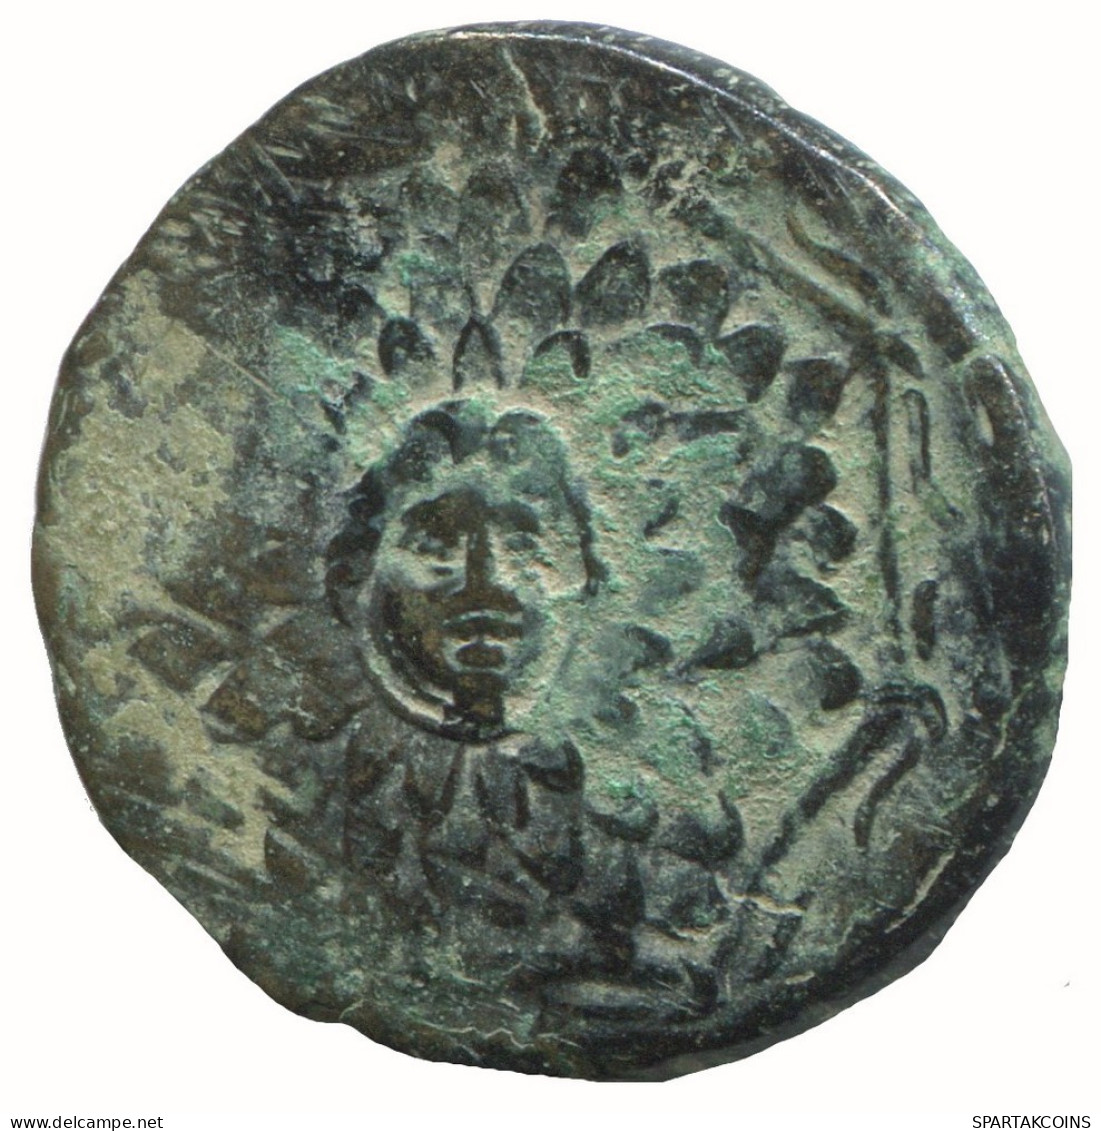 AMISOS PONTOS 100 BC Aegis With Facing Gorgon 7.3g/23mm #NNN1521.30.F.A - Griechische Münzen